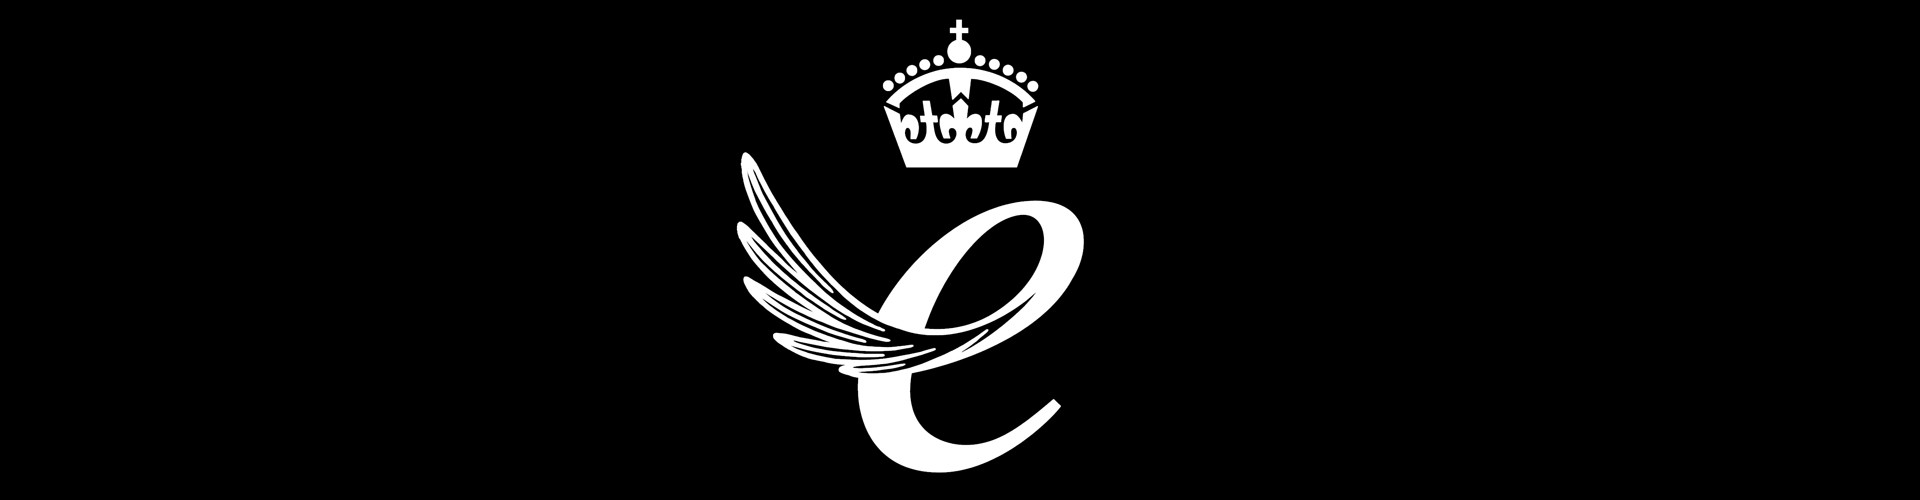 queens award for enterprise logo